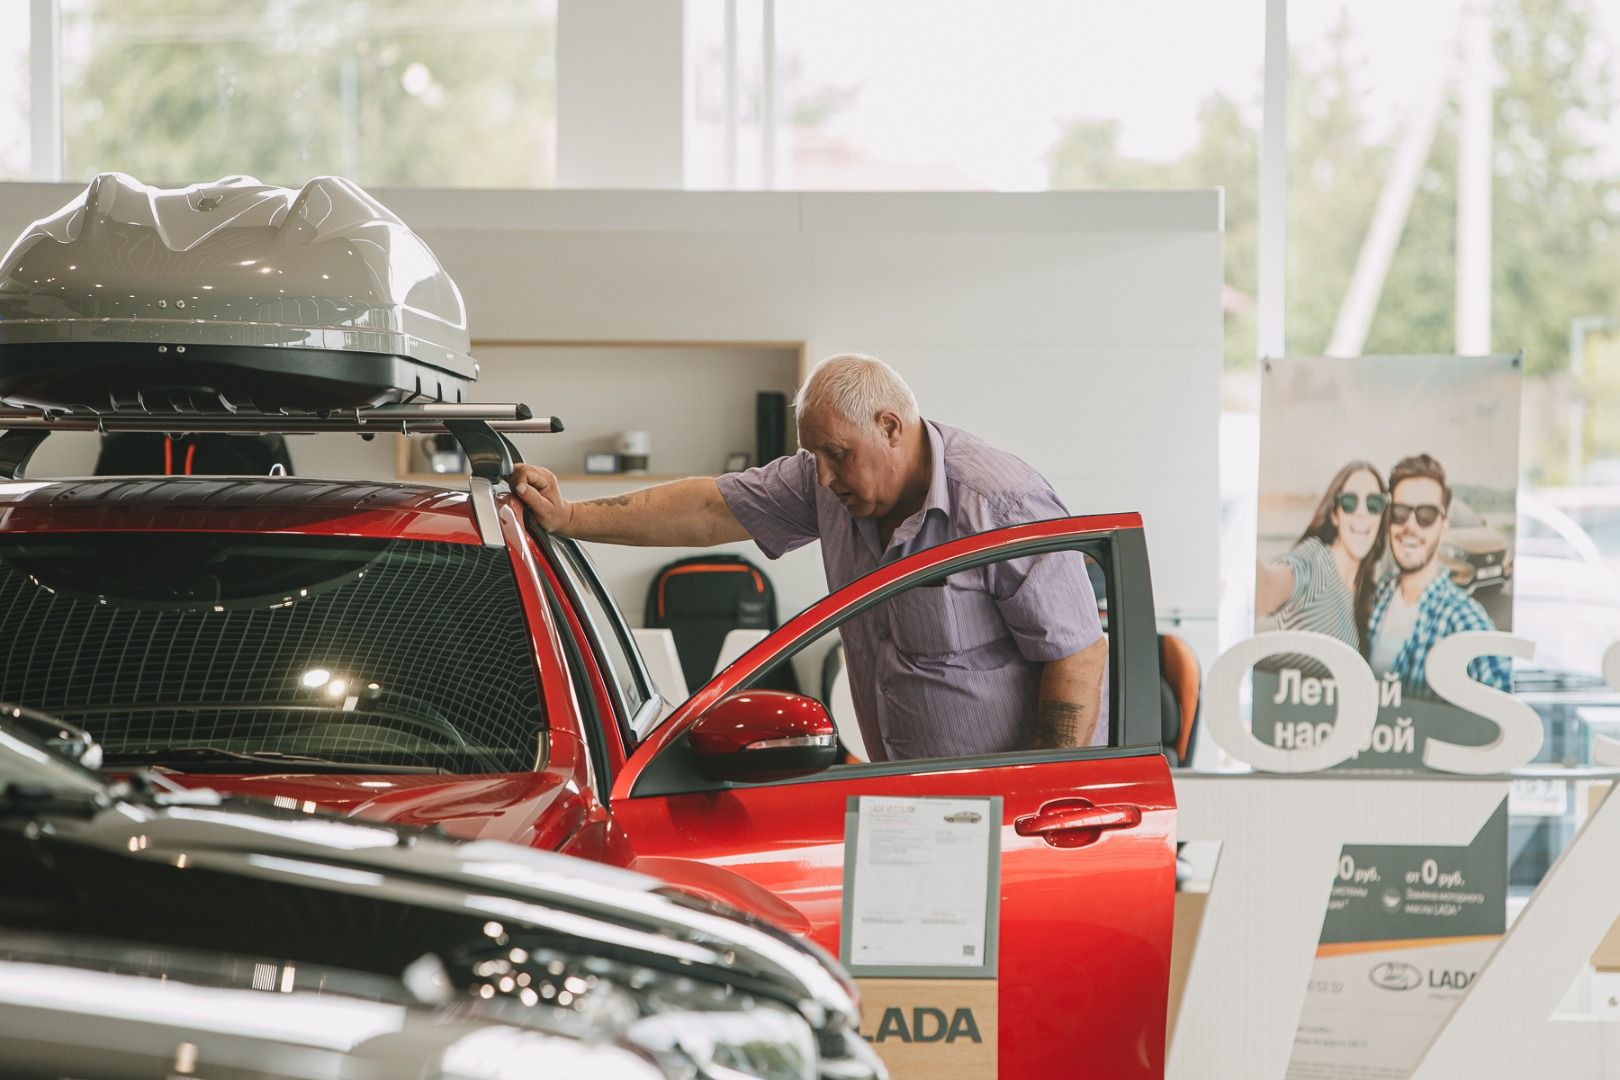 Цены на Lada повысят  в пятый раз за текущий год 